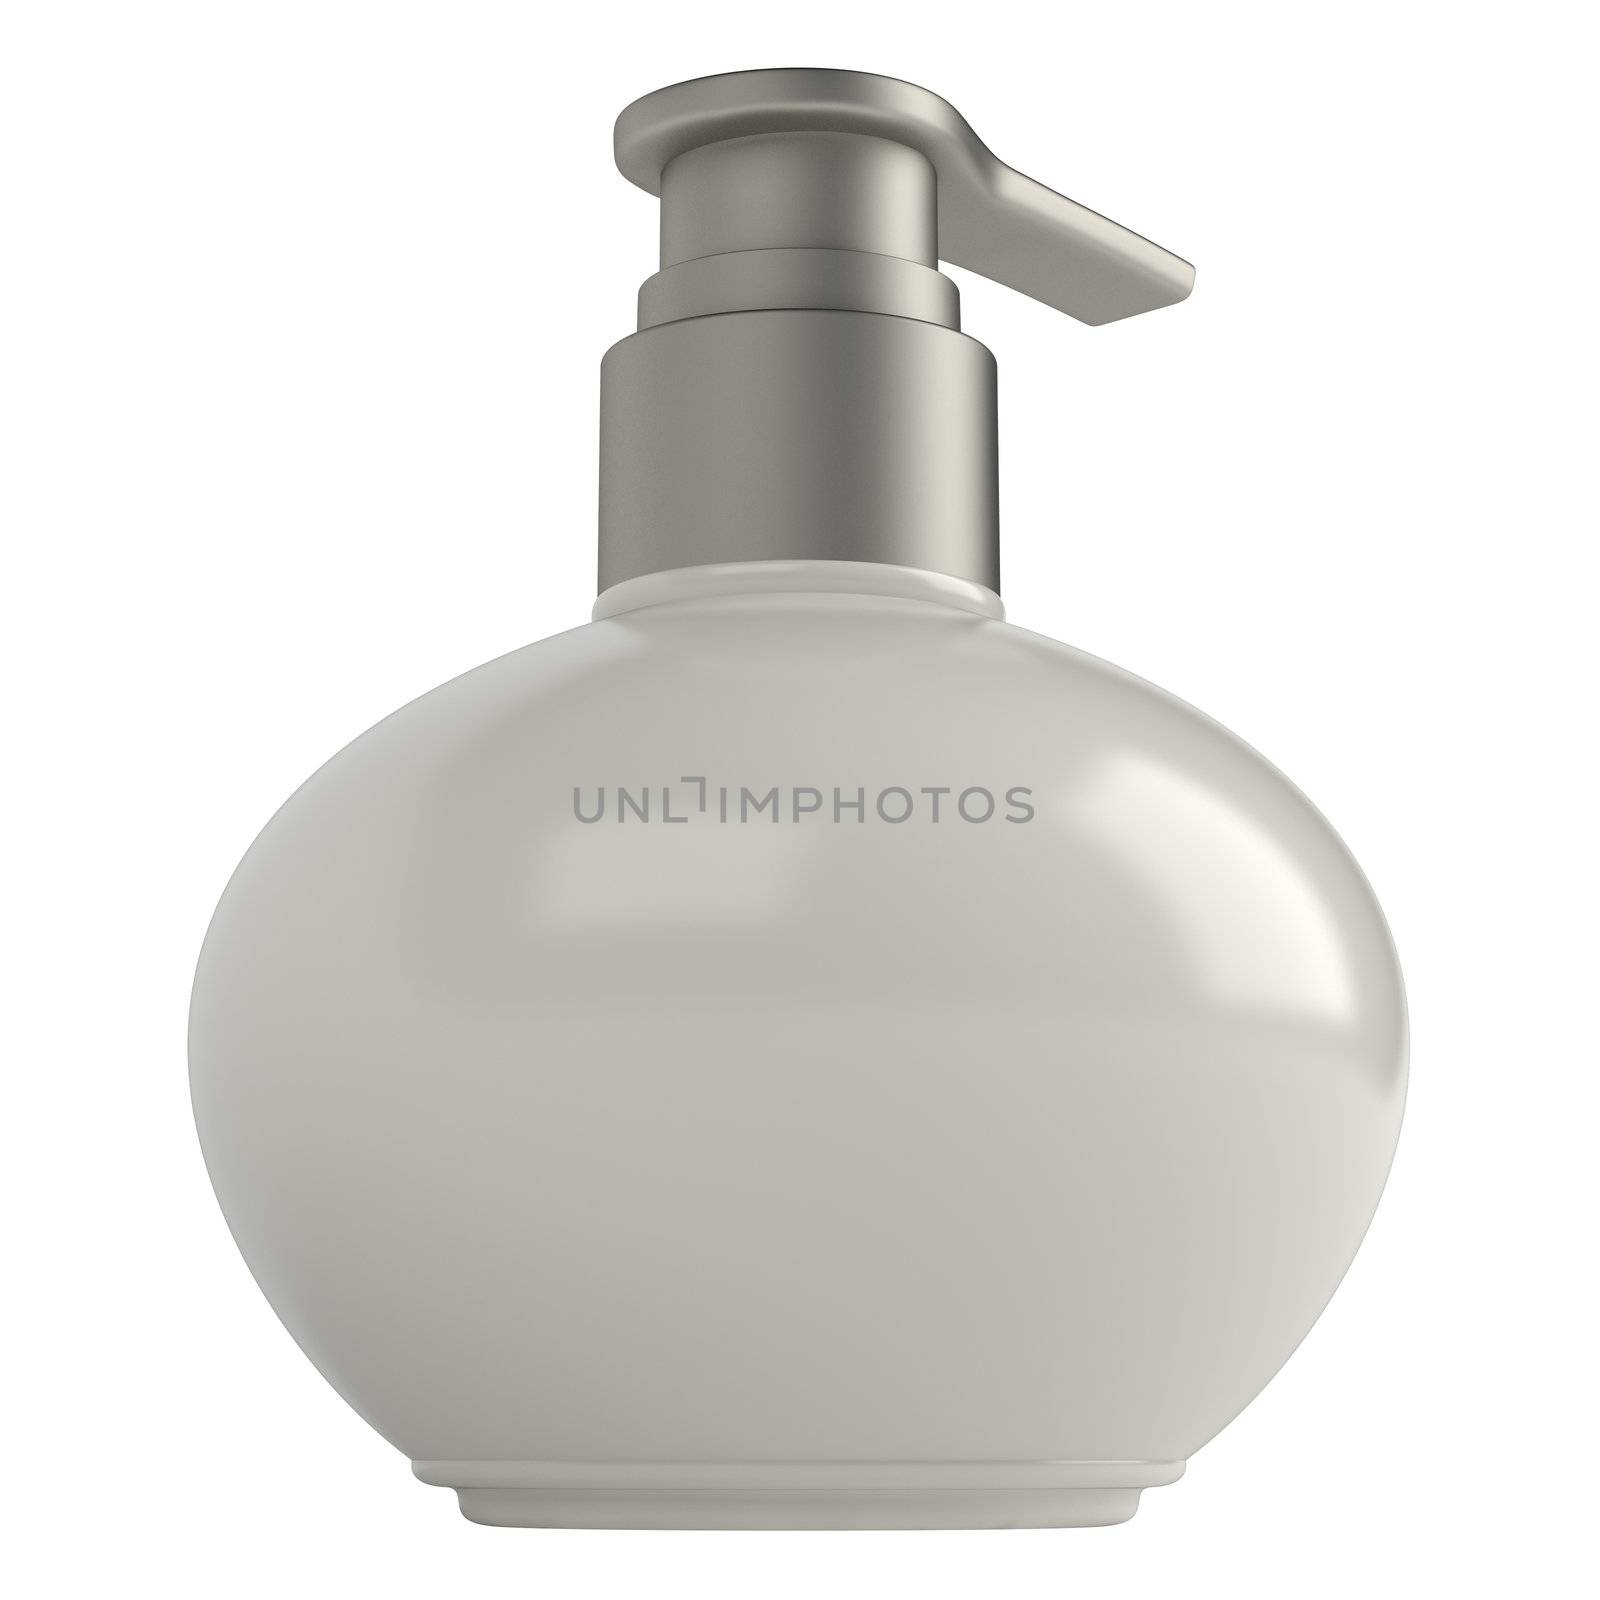 Round soap bottle isolated on white background